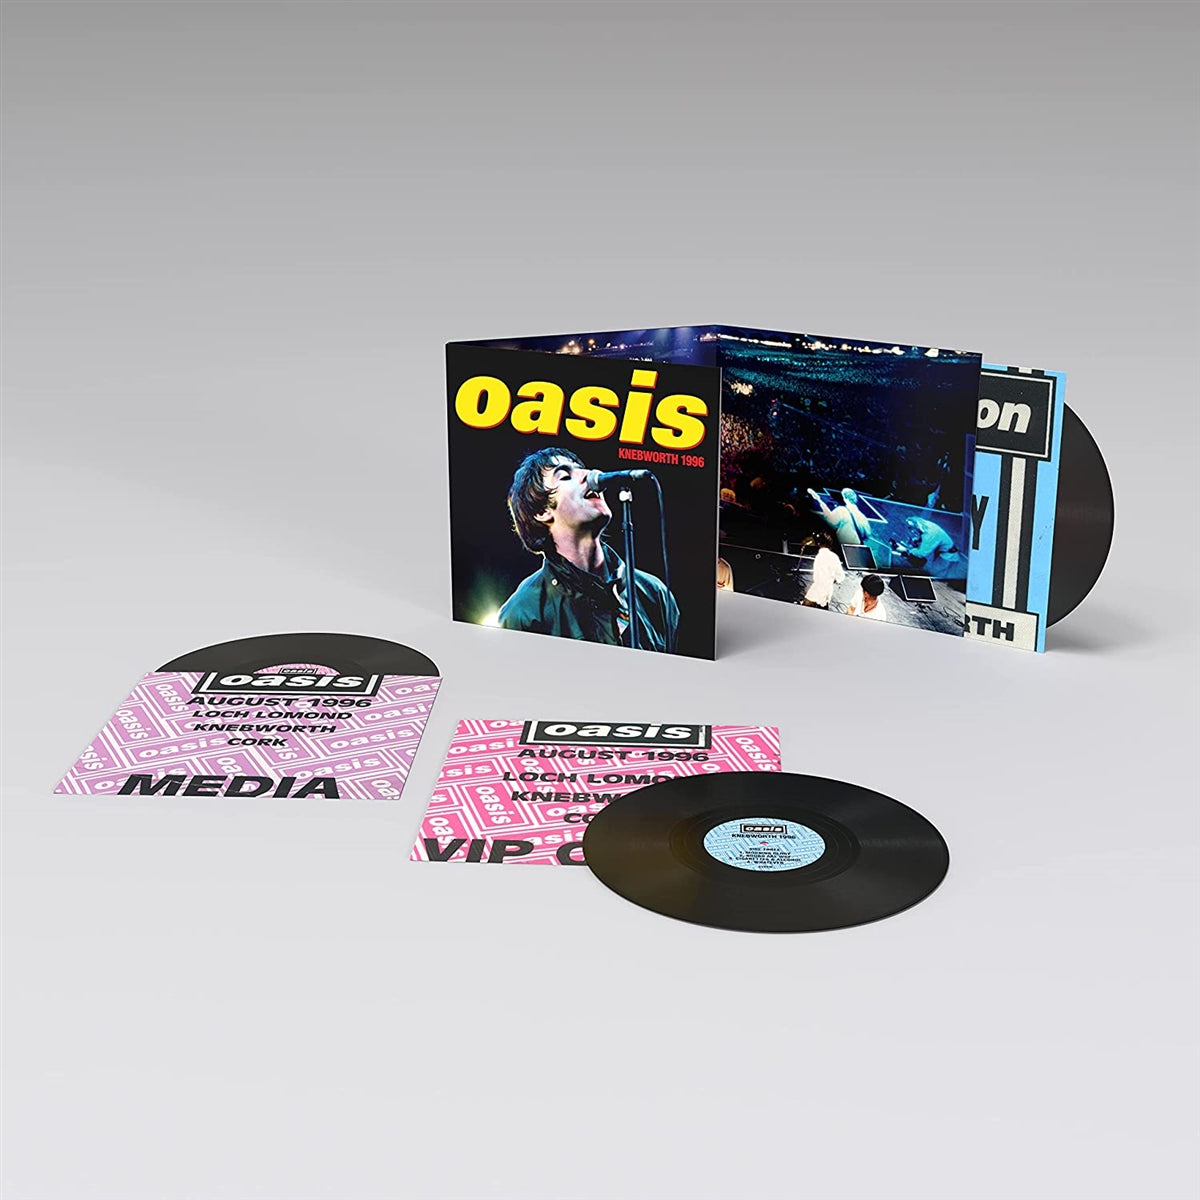 Oasis - Knebworth 1996 - LP